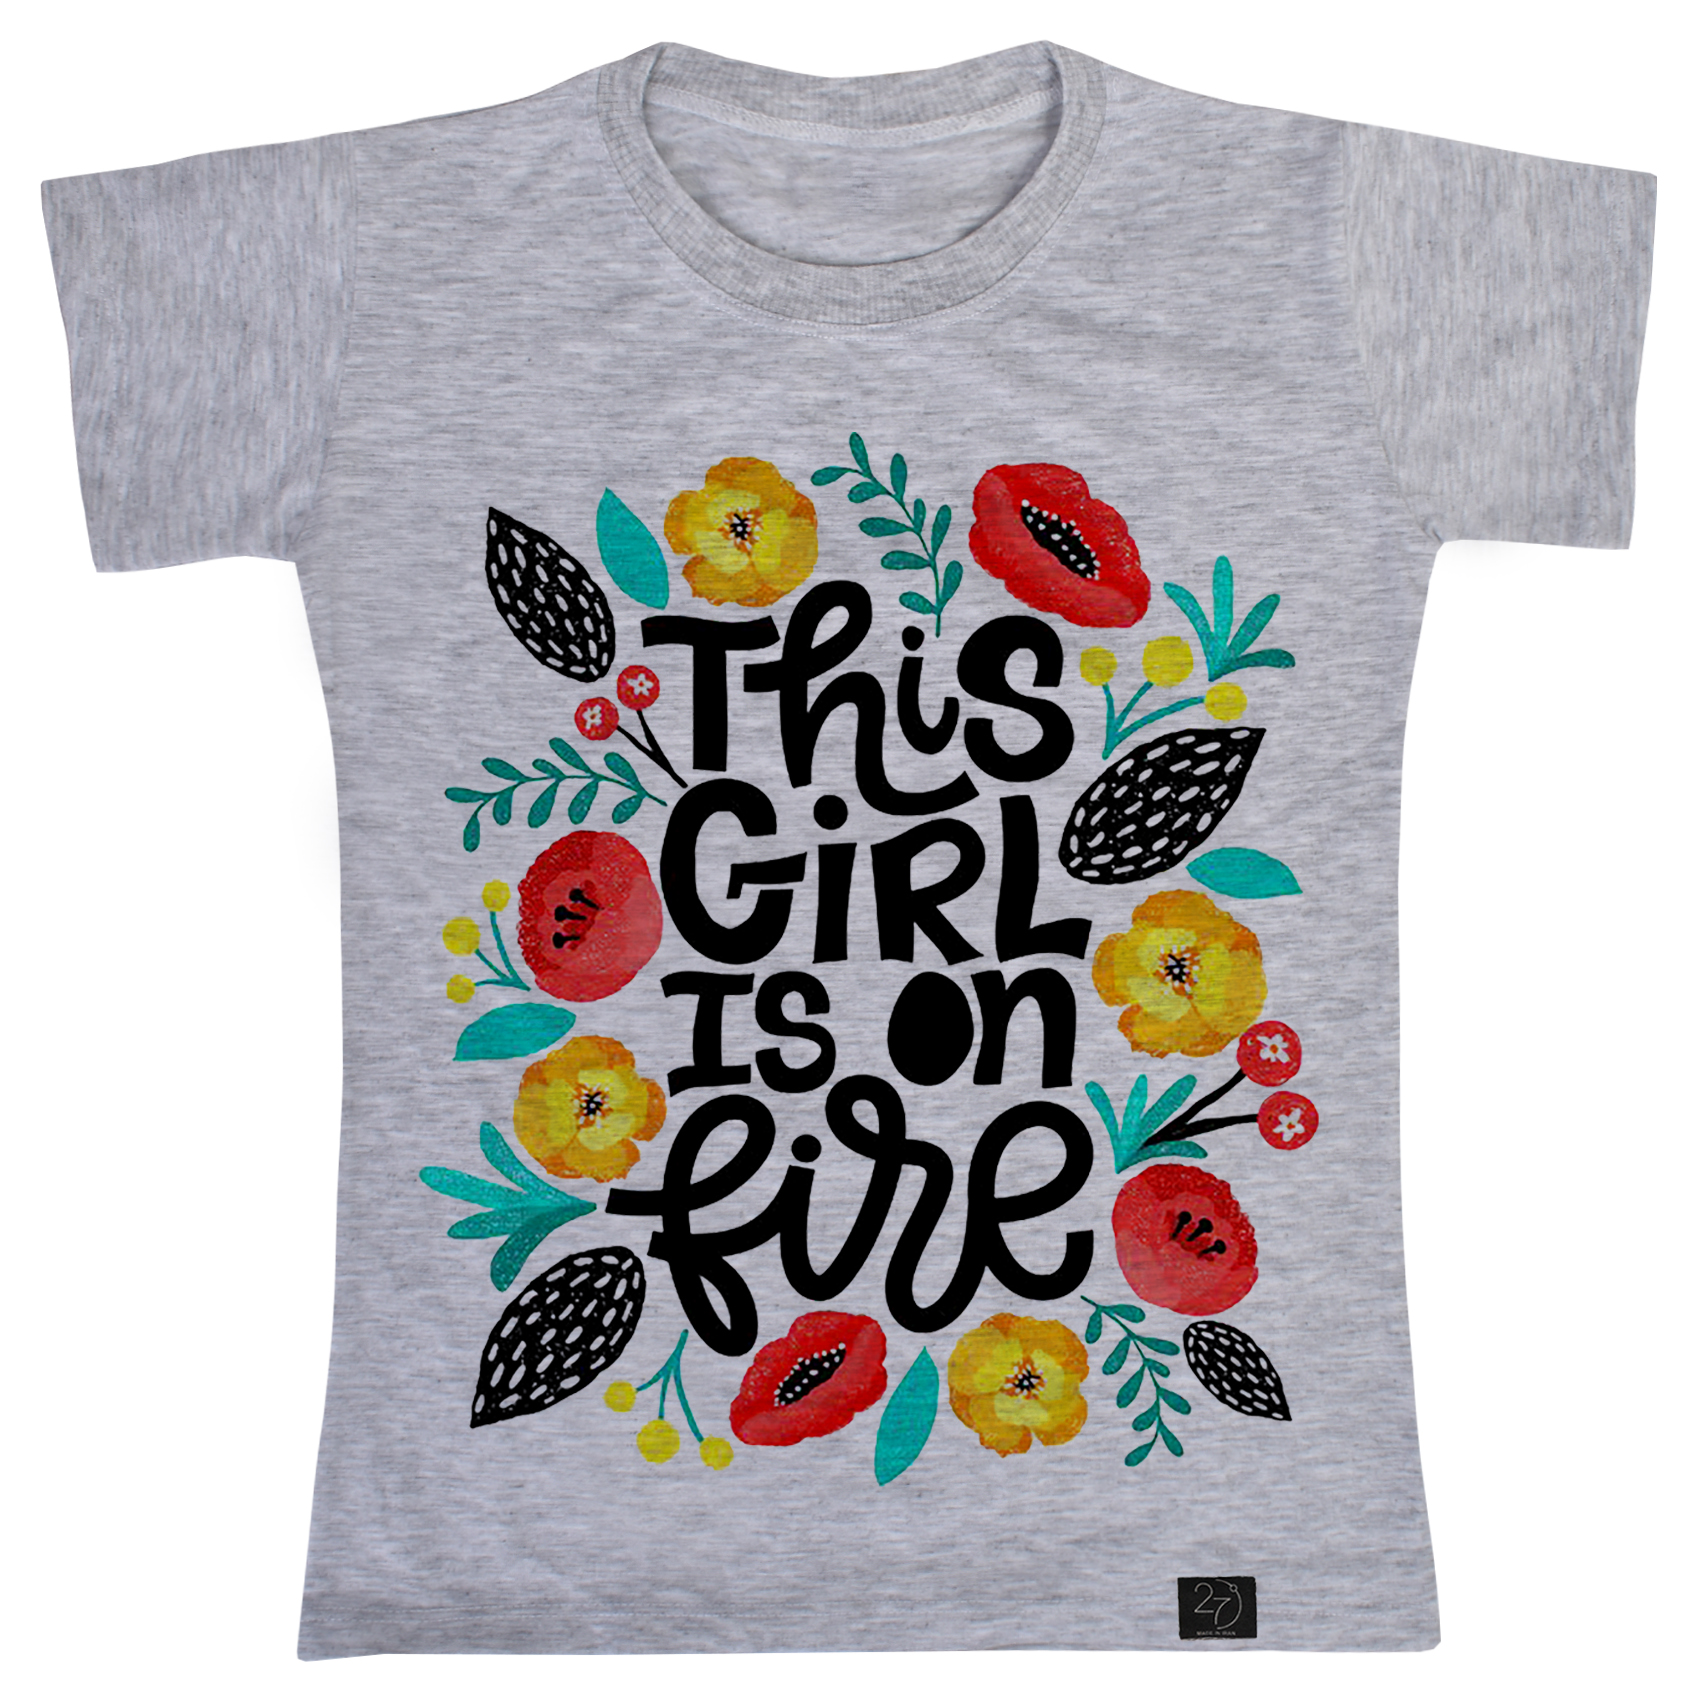 نقد و بررسی تی شرت آستین کوتاه دخترانه 27 مدل THIS GIRL کد V231 توسط خریداران